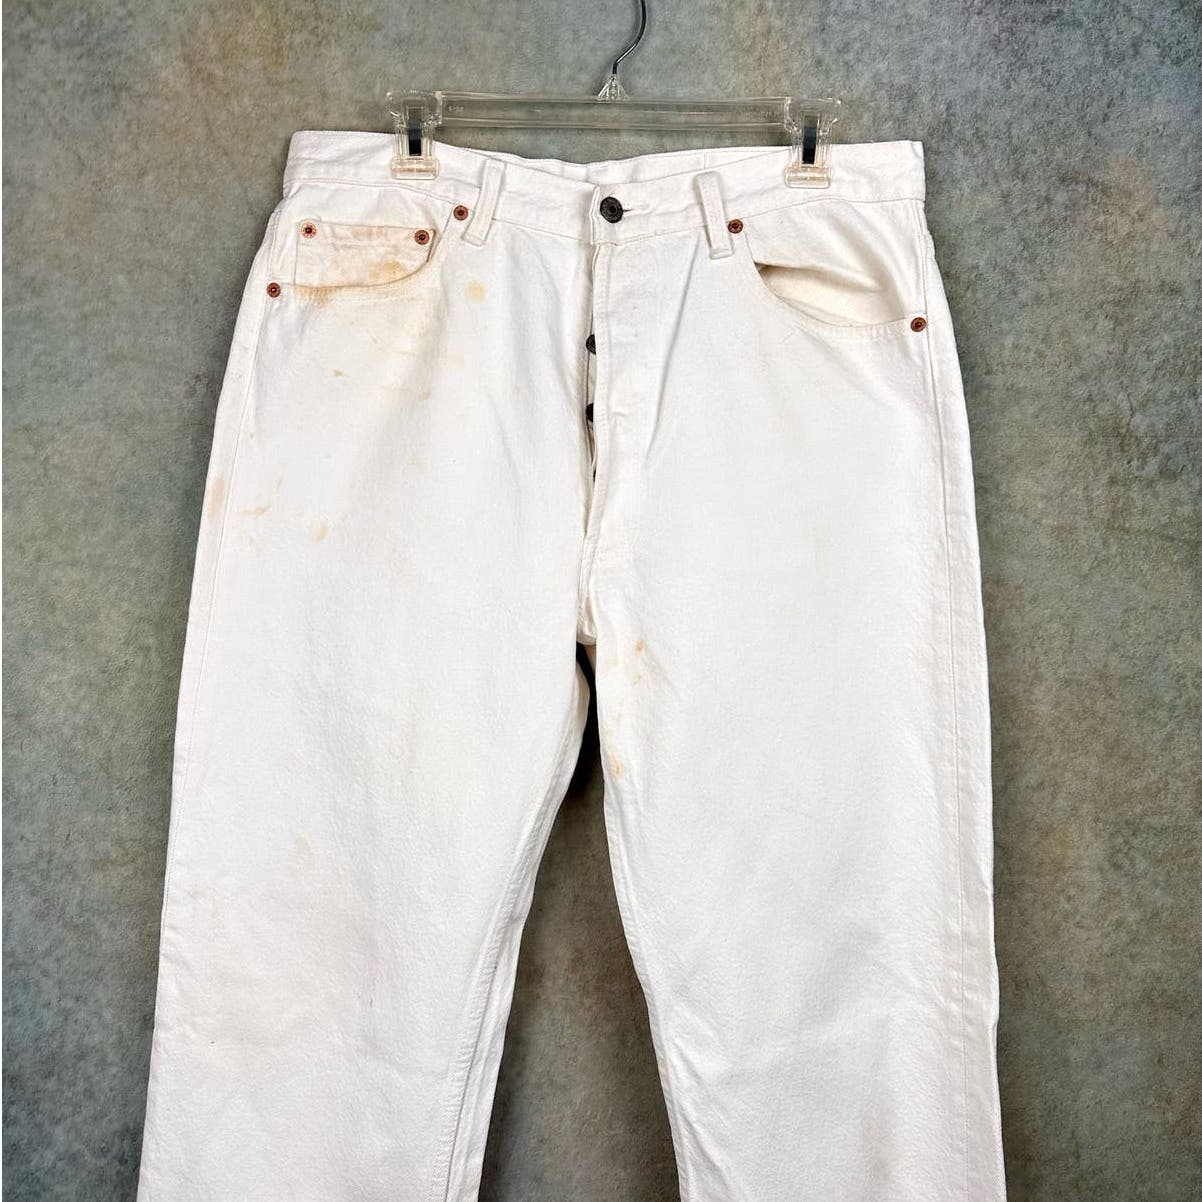 Vintage Levis 501 Button Fly Denim Jeans 36x34